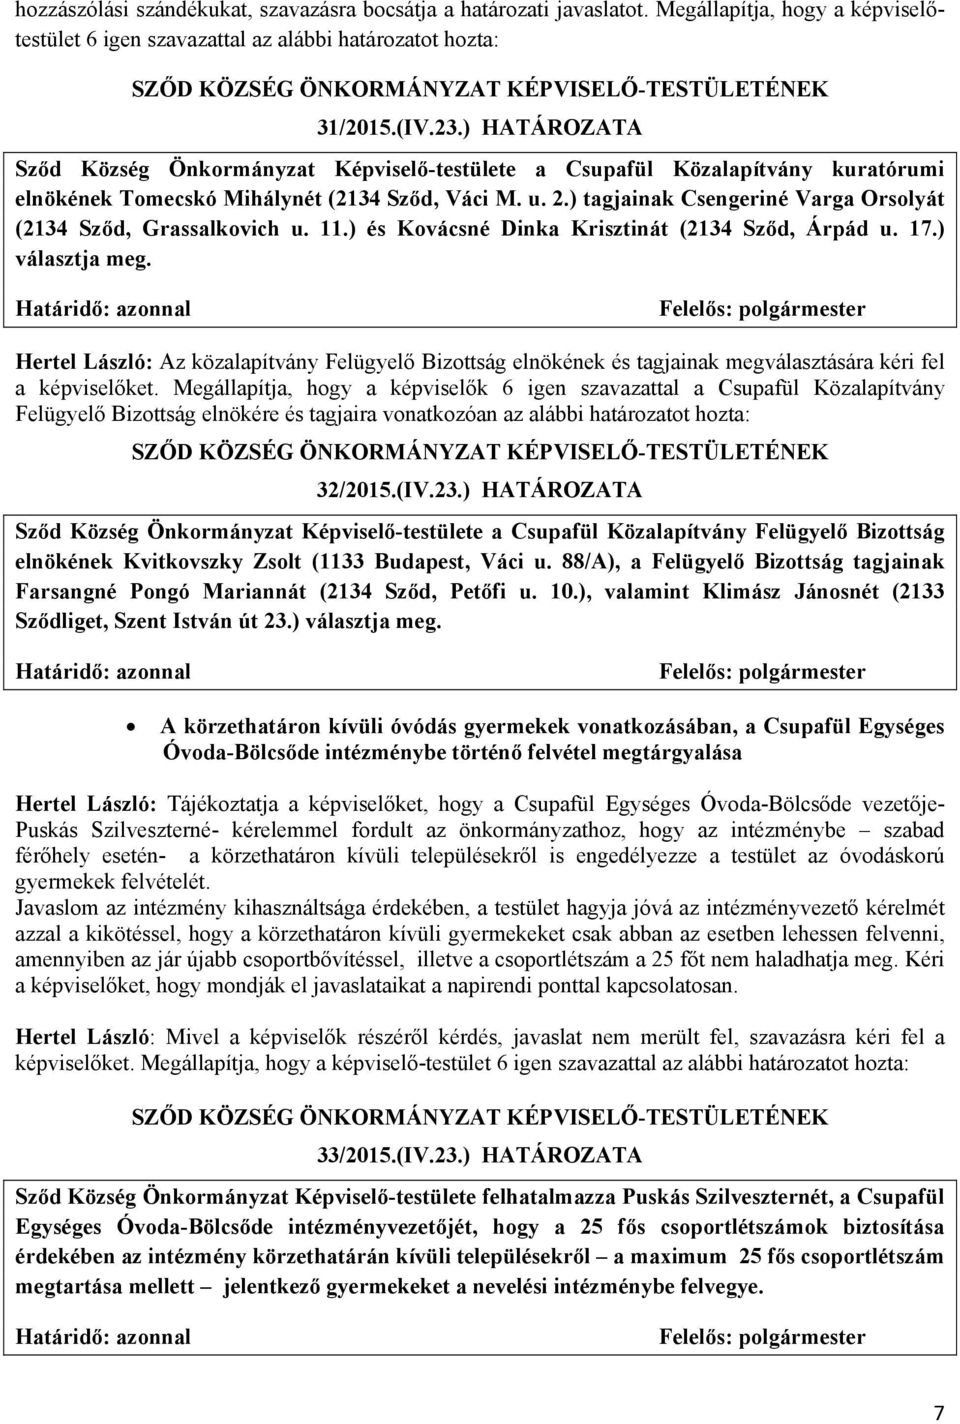 ) tagjainak Csengeriné Varga Orsolyát (2134 Sződ, Grassalkovich u. 11.) és Kovácsné Dinka Krisztinát (2134 Sződ, Árpád u. 17.) választja meg.